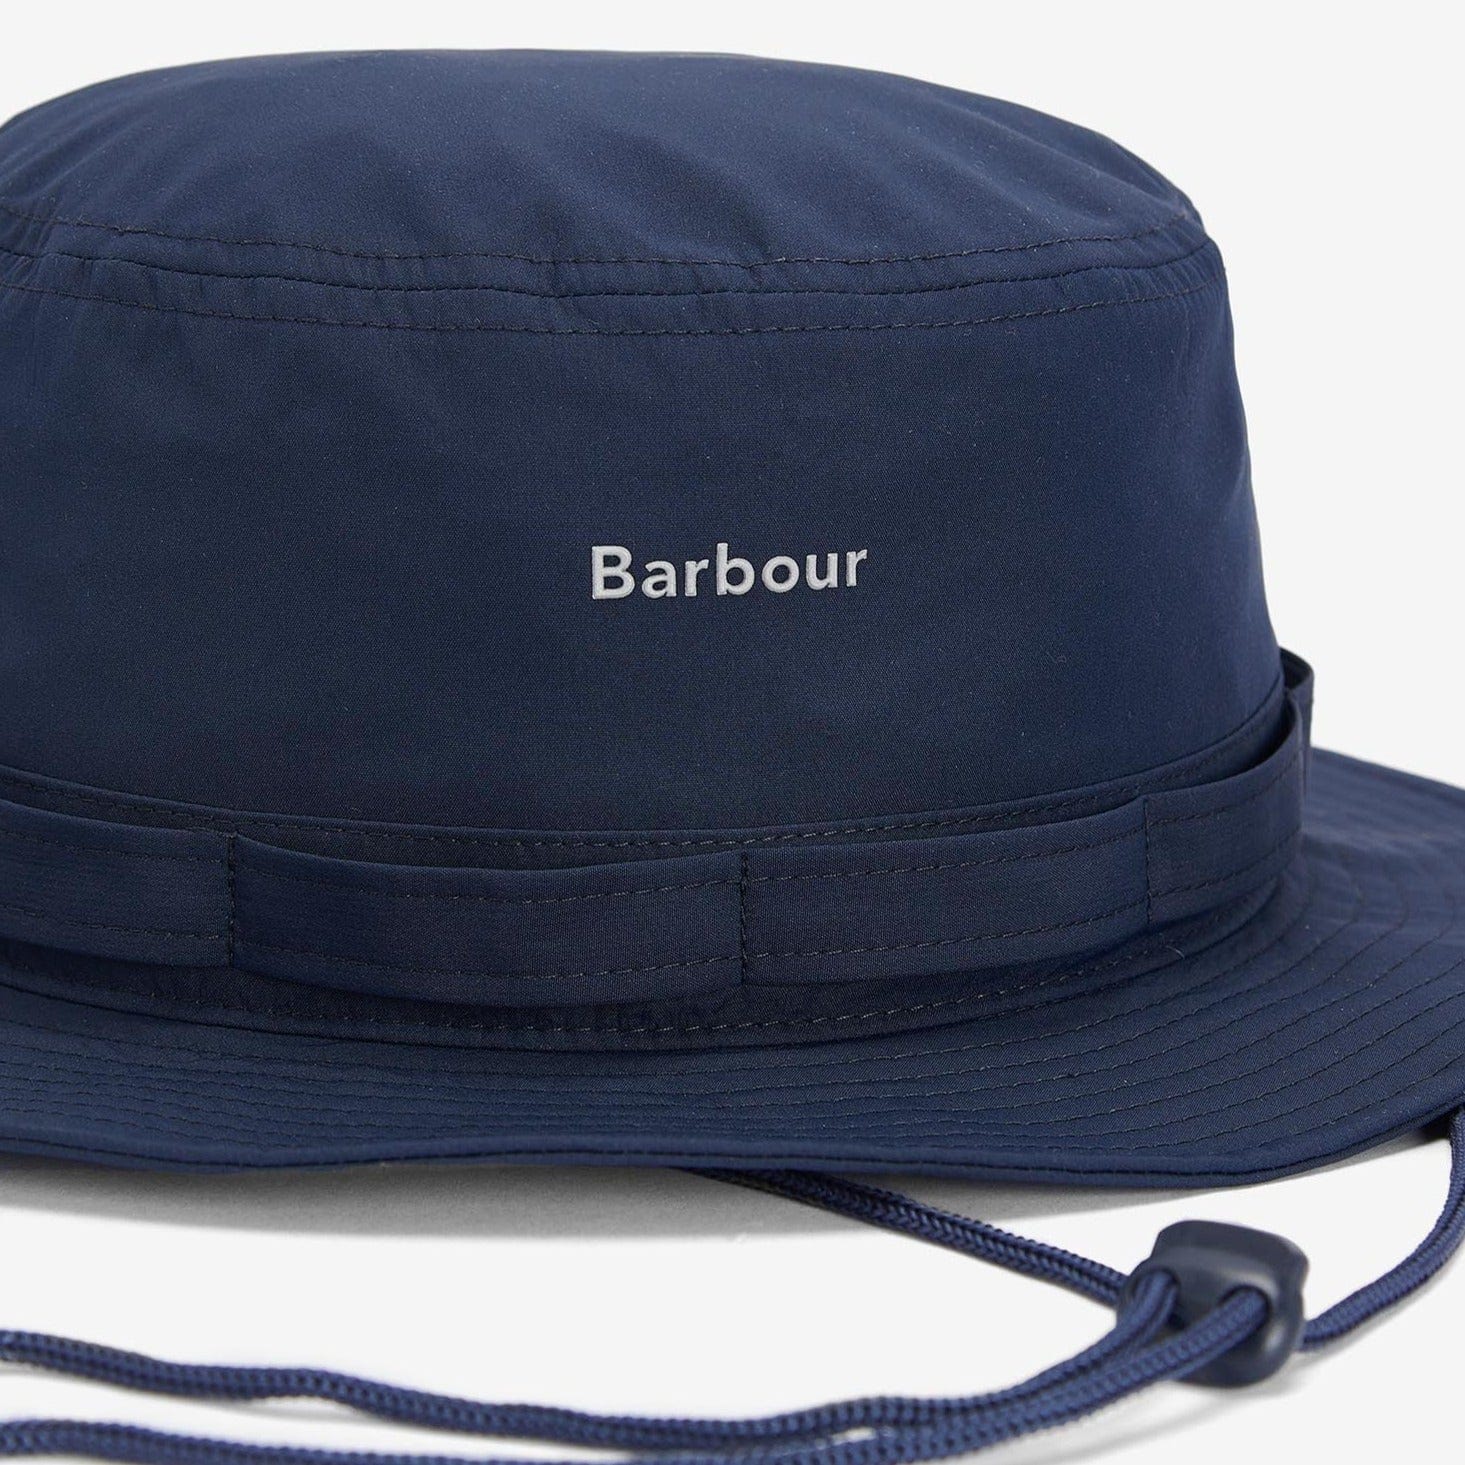 Barbour Teesdale Showerproof Bucket Hat in Navy